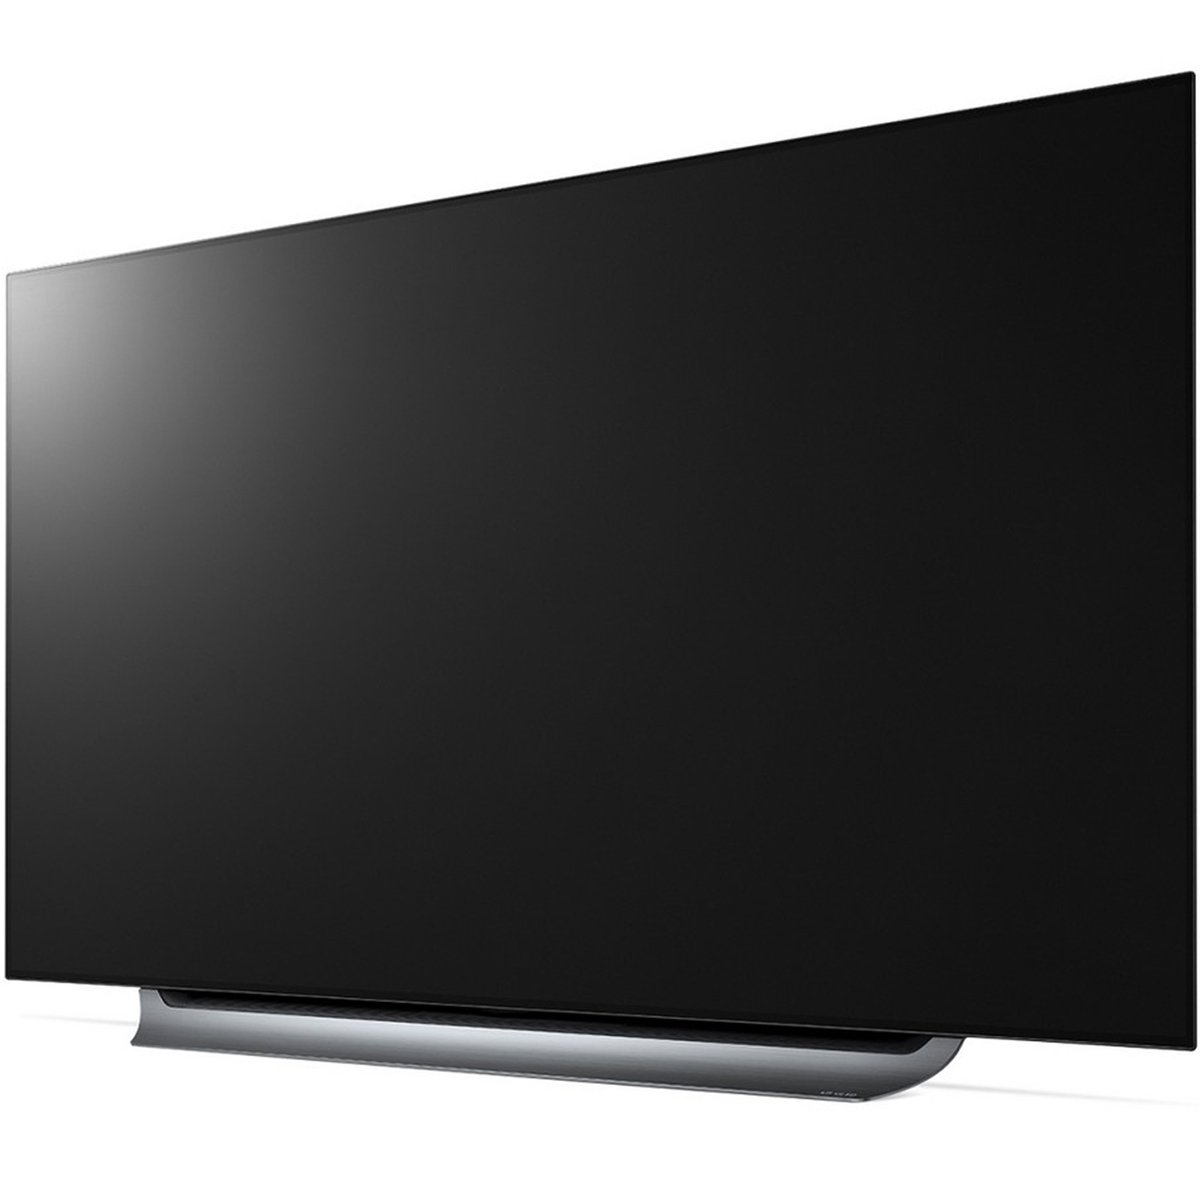 LG 4K Ultra HD Smart OLED TV 55C8PVA 55inch